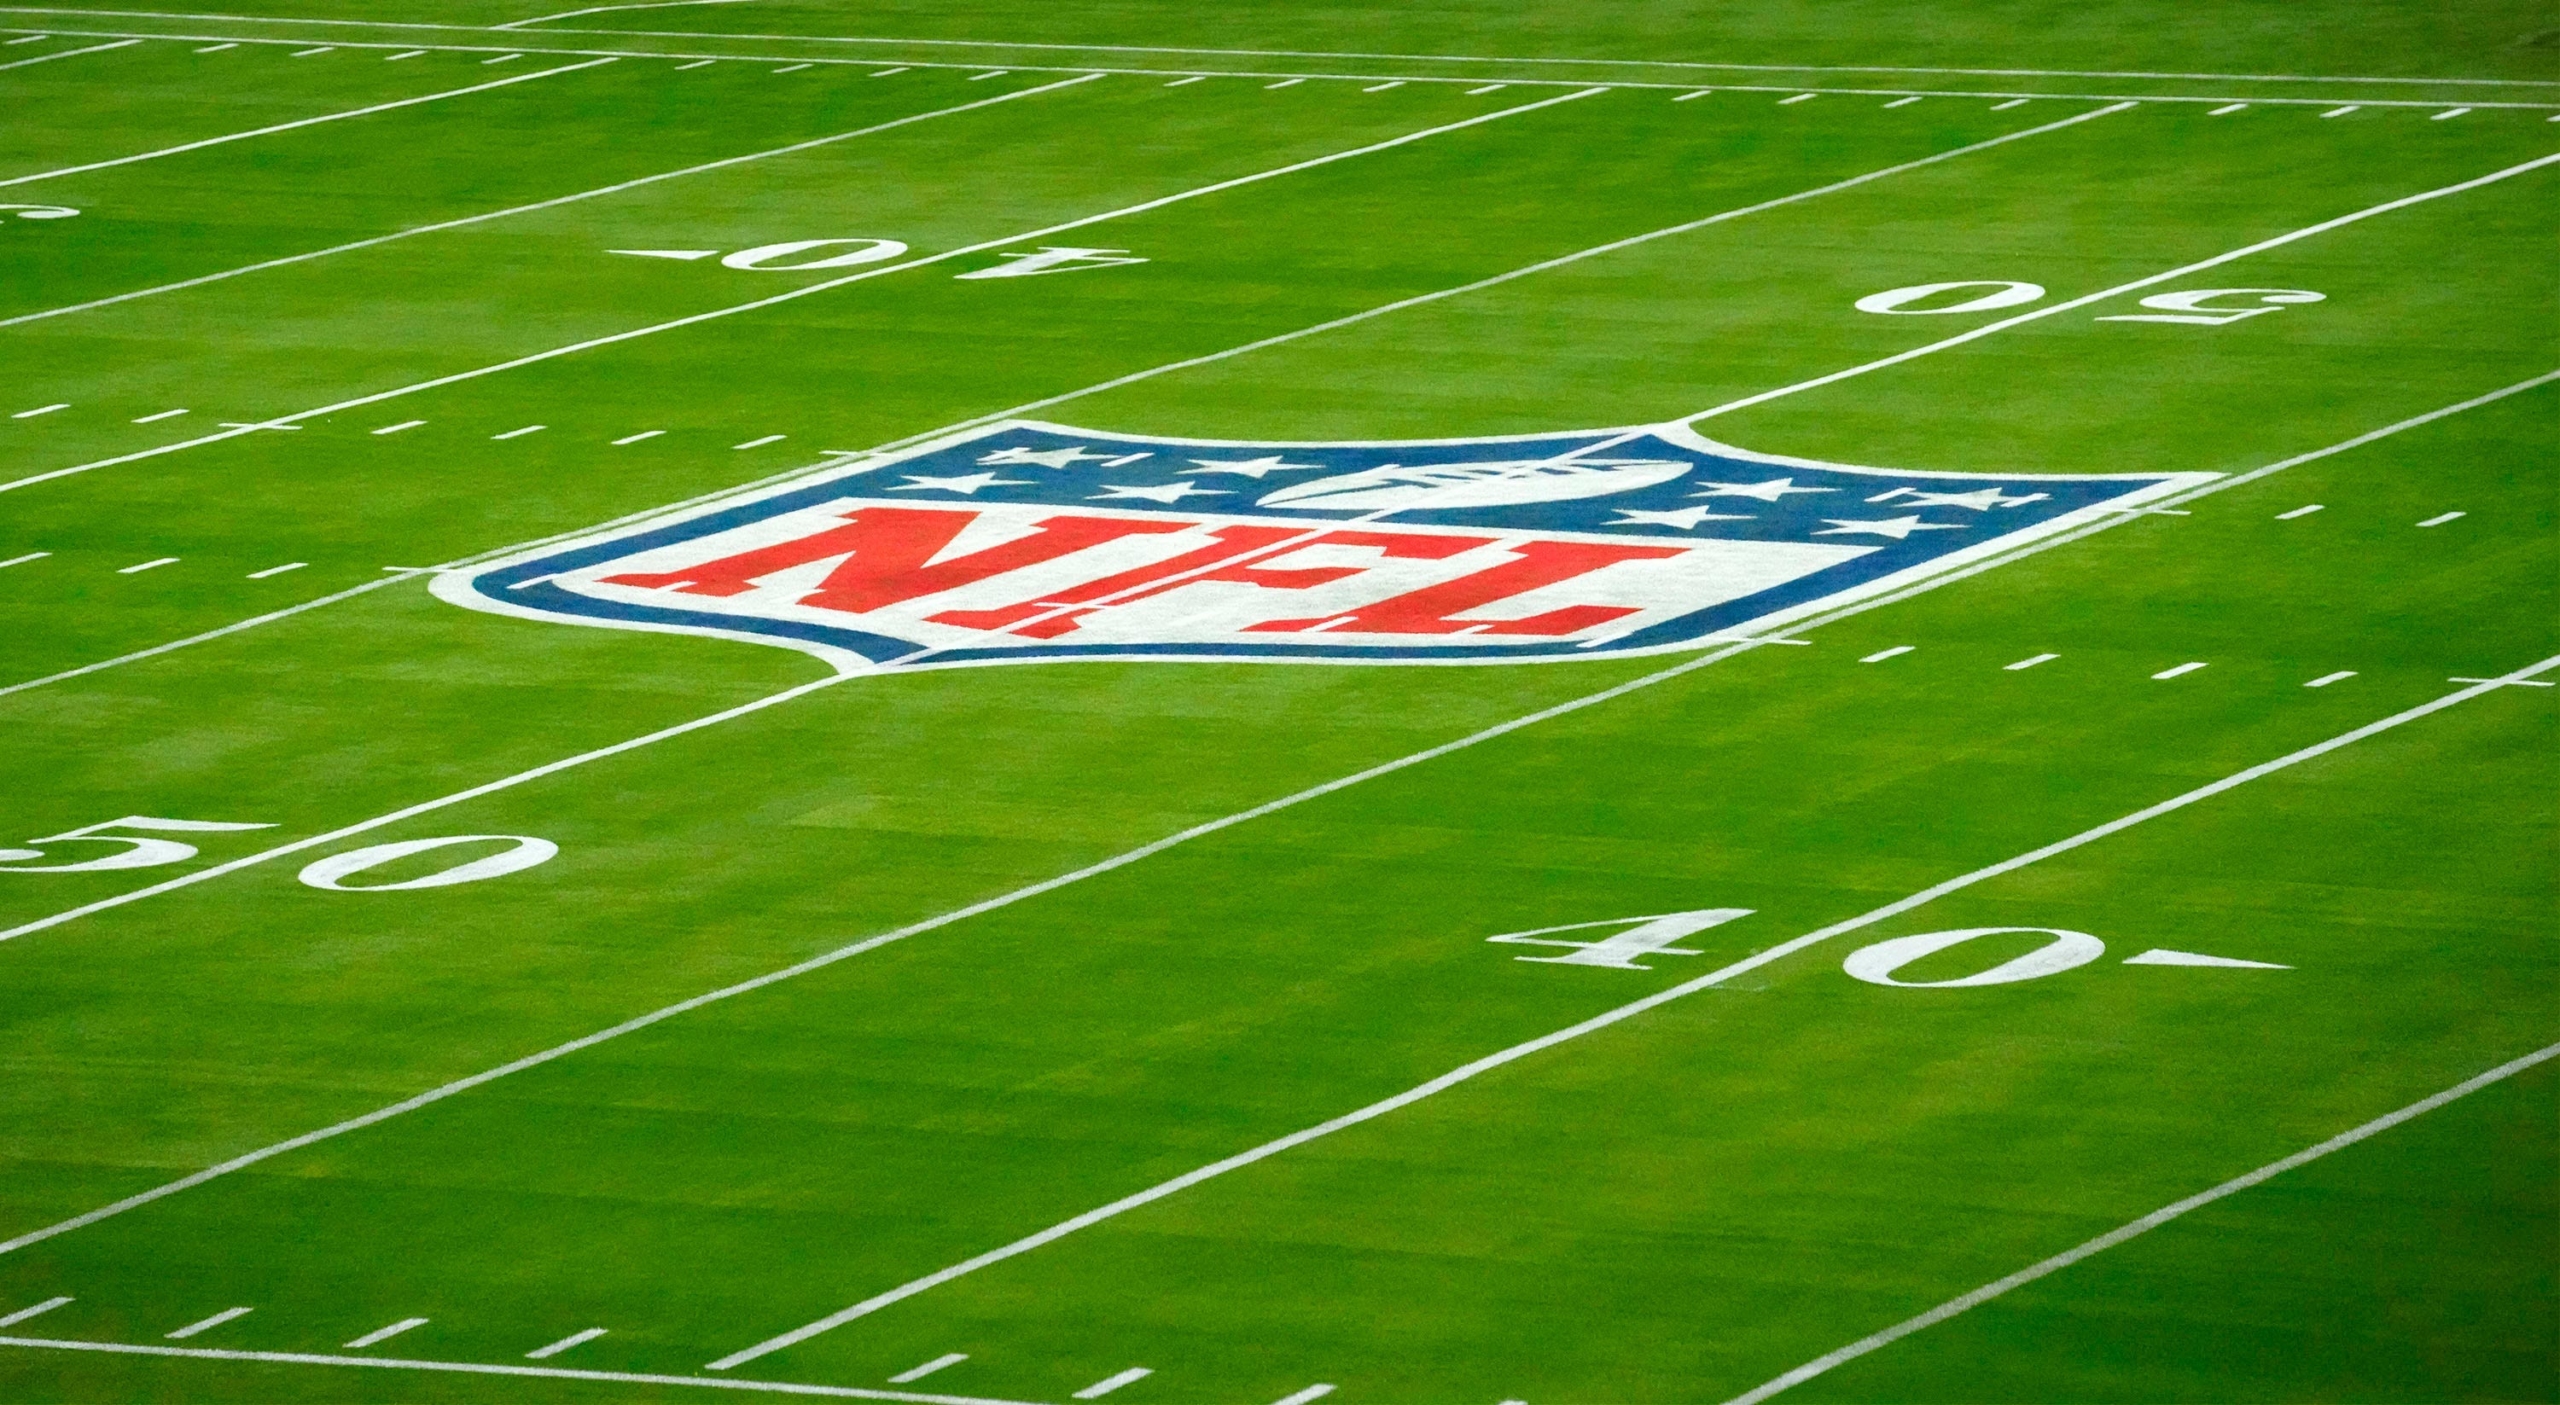 NFL 2021 Byes in Week 7: How many teams get a bye week?